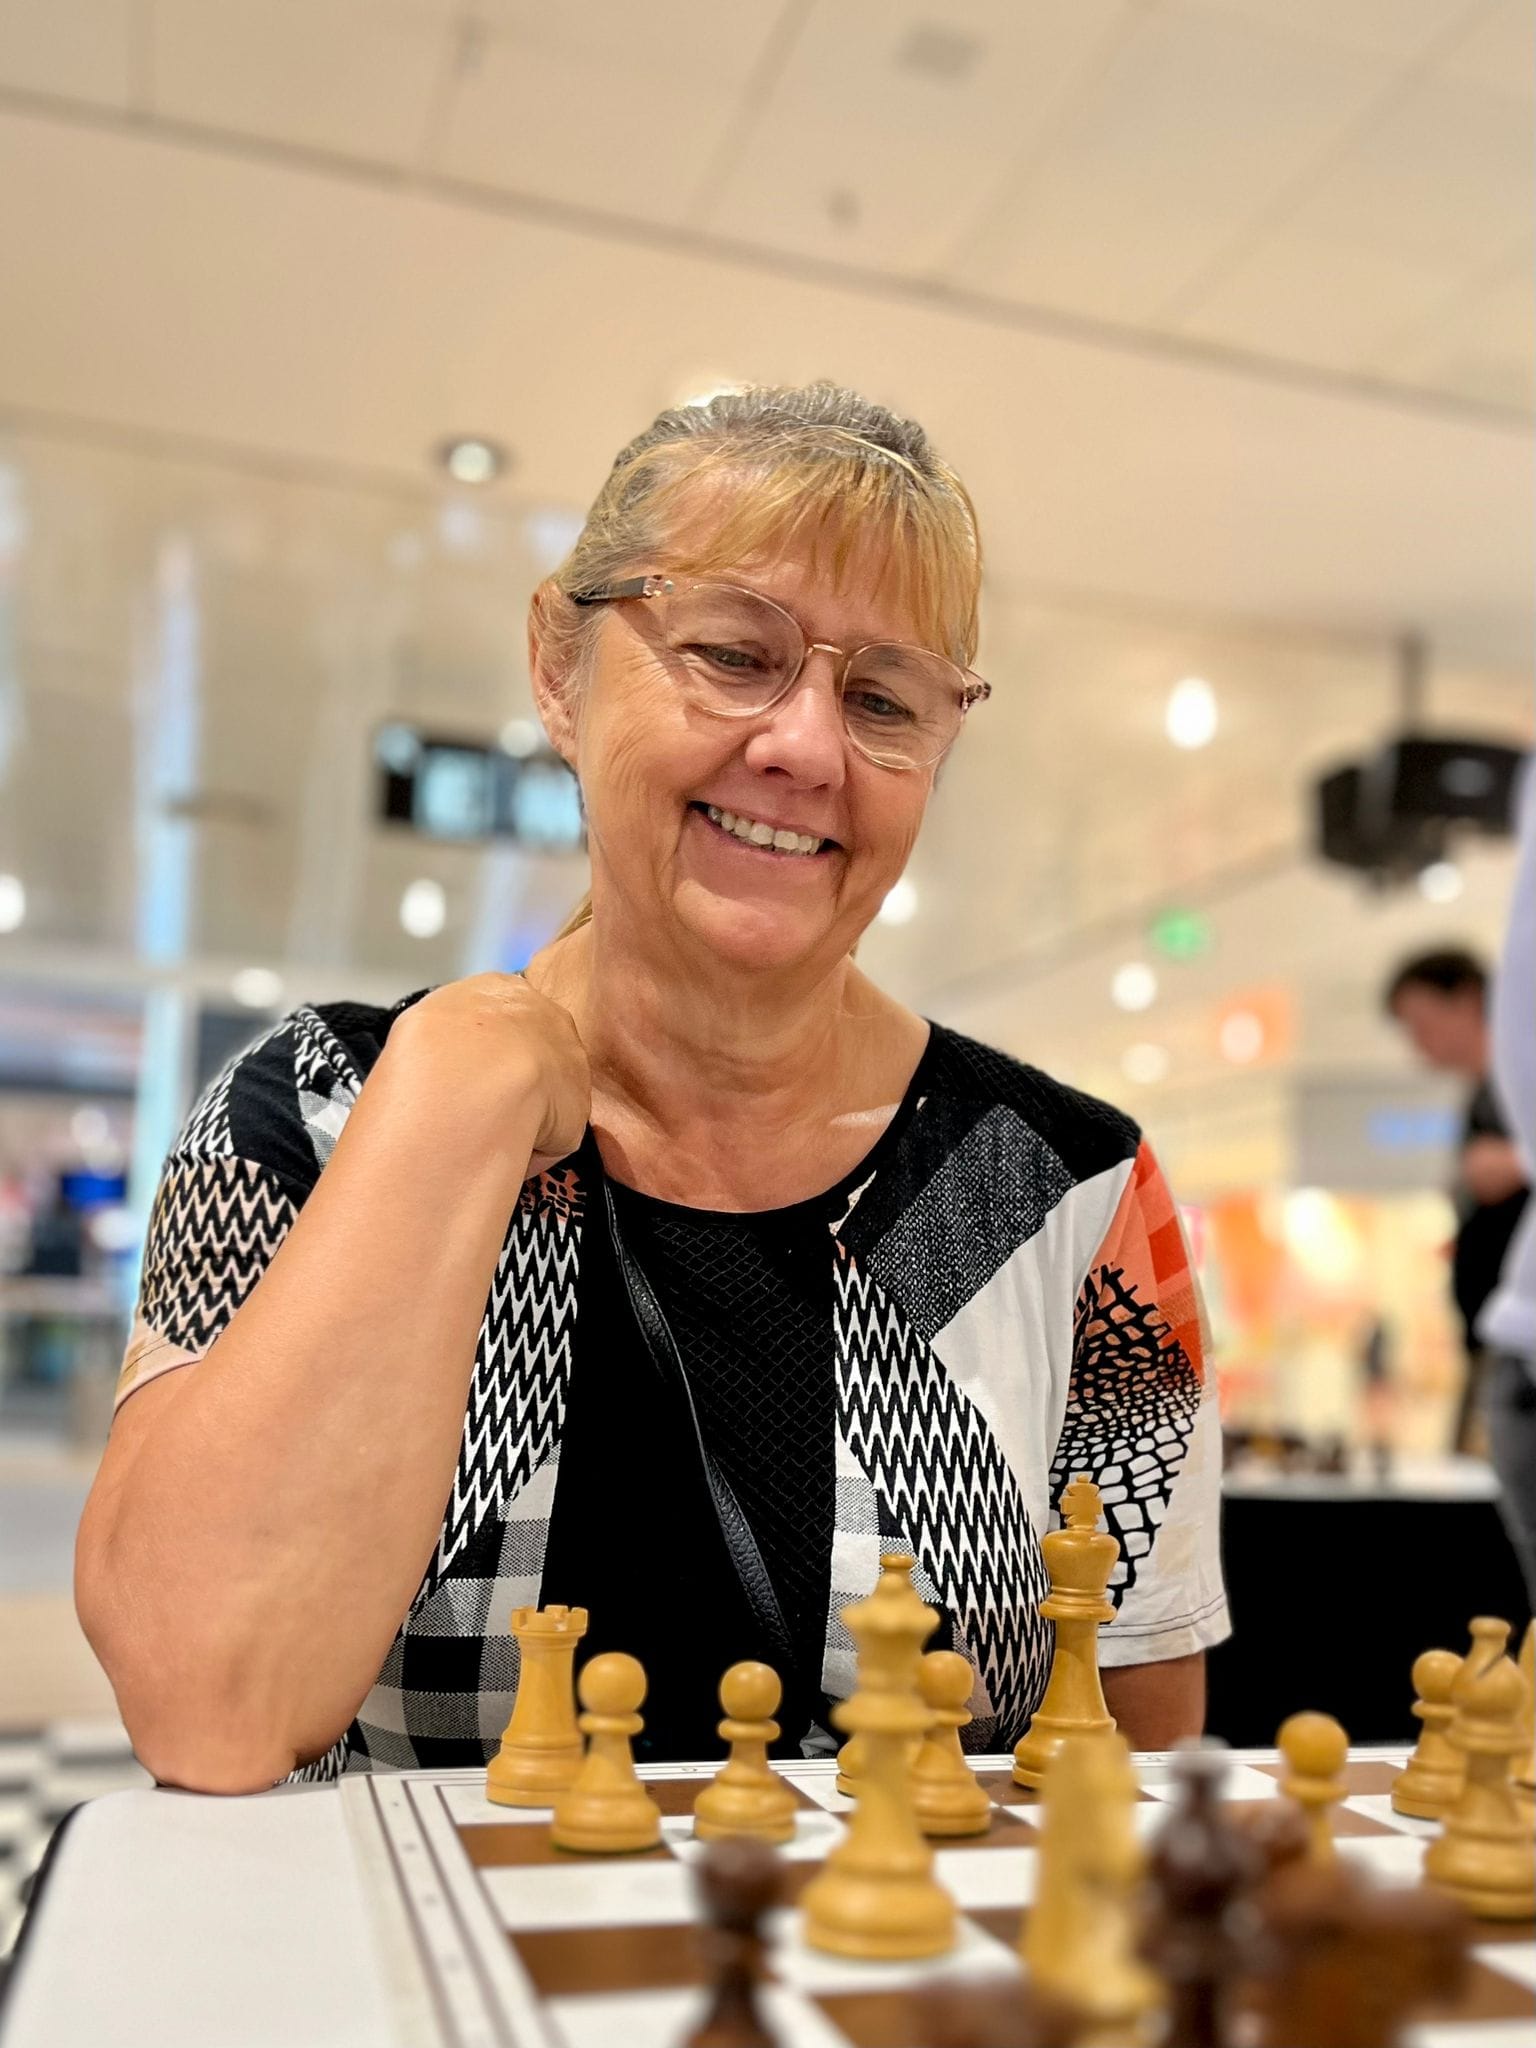 Faszination Schach im Aquis Plaza in Aachen ChessBase